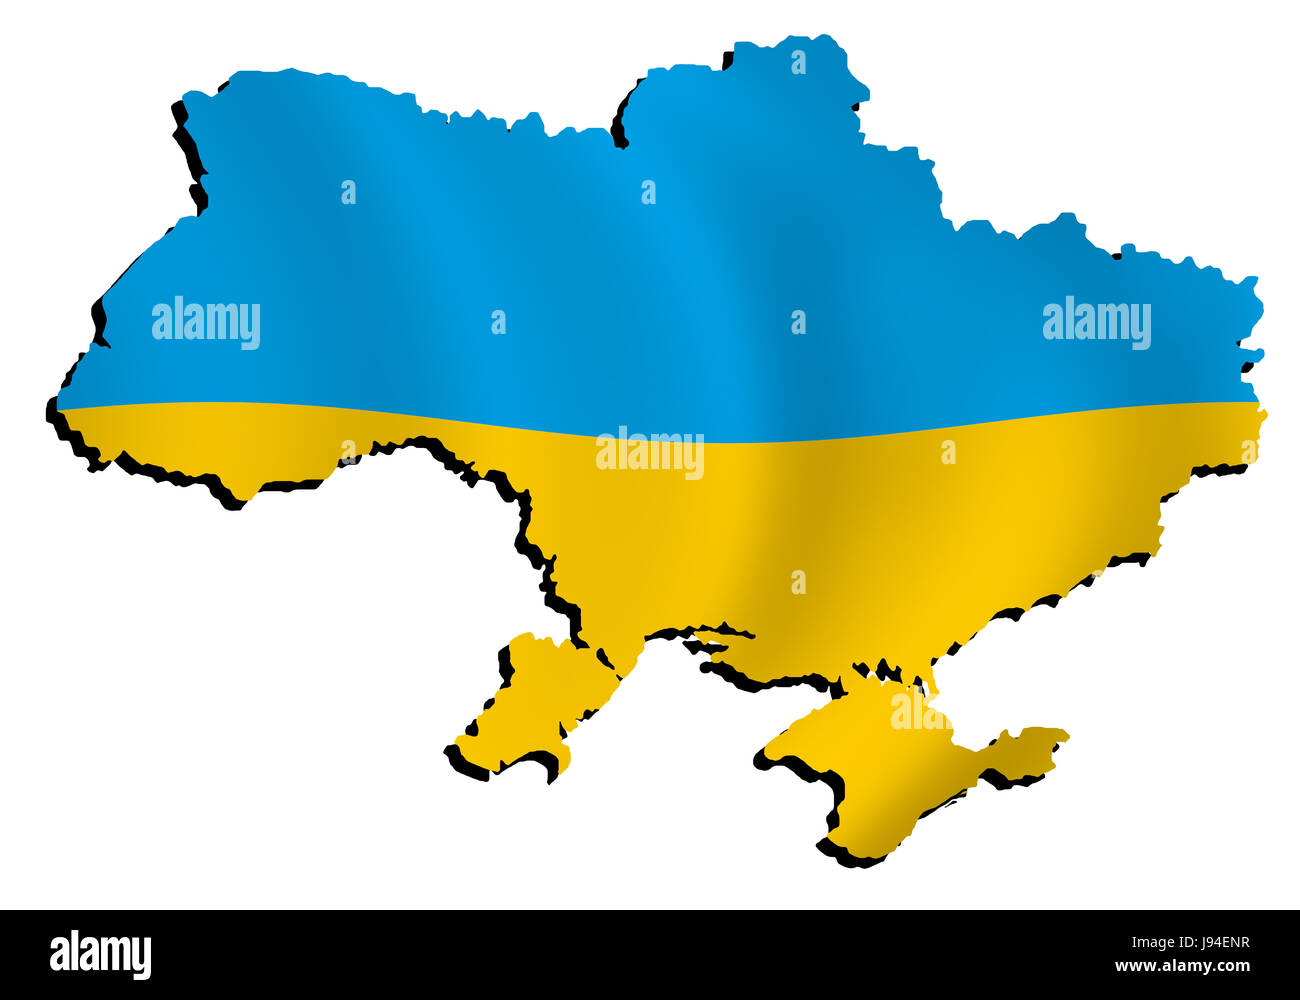 Flagge, Grenze, Gliederung, Ukraine, Atlas, Karte der Welt, Karte, Detail, isoliert, Stockfoto